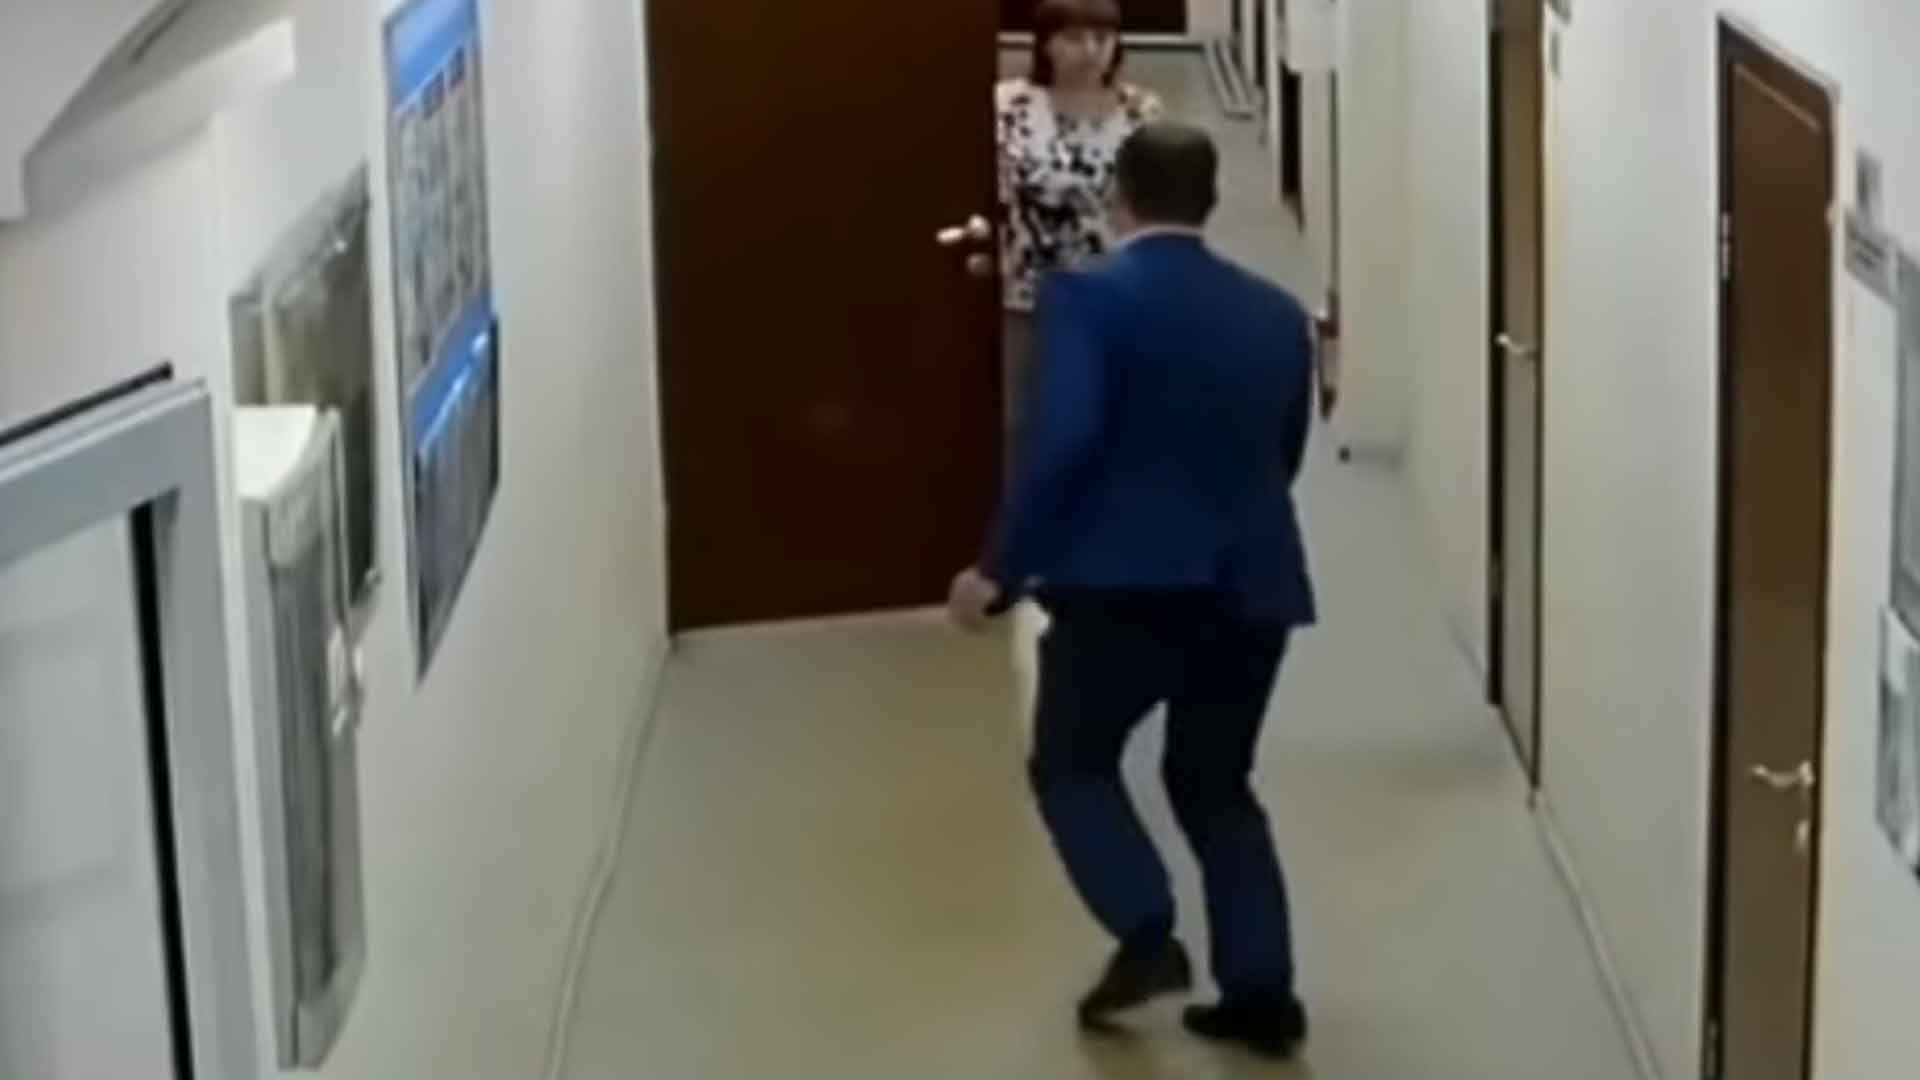 Dailystorm - Бегом от следователей: в Иркутске чиновник пытался скрыться — видео